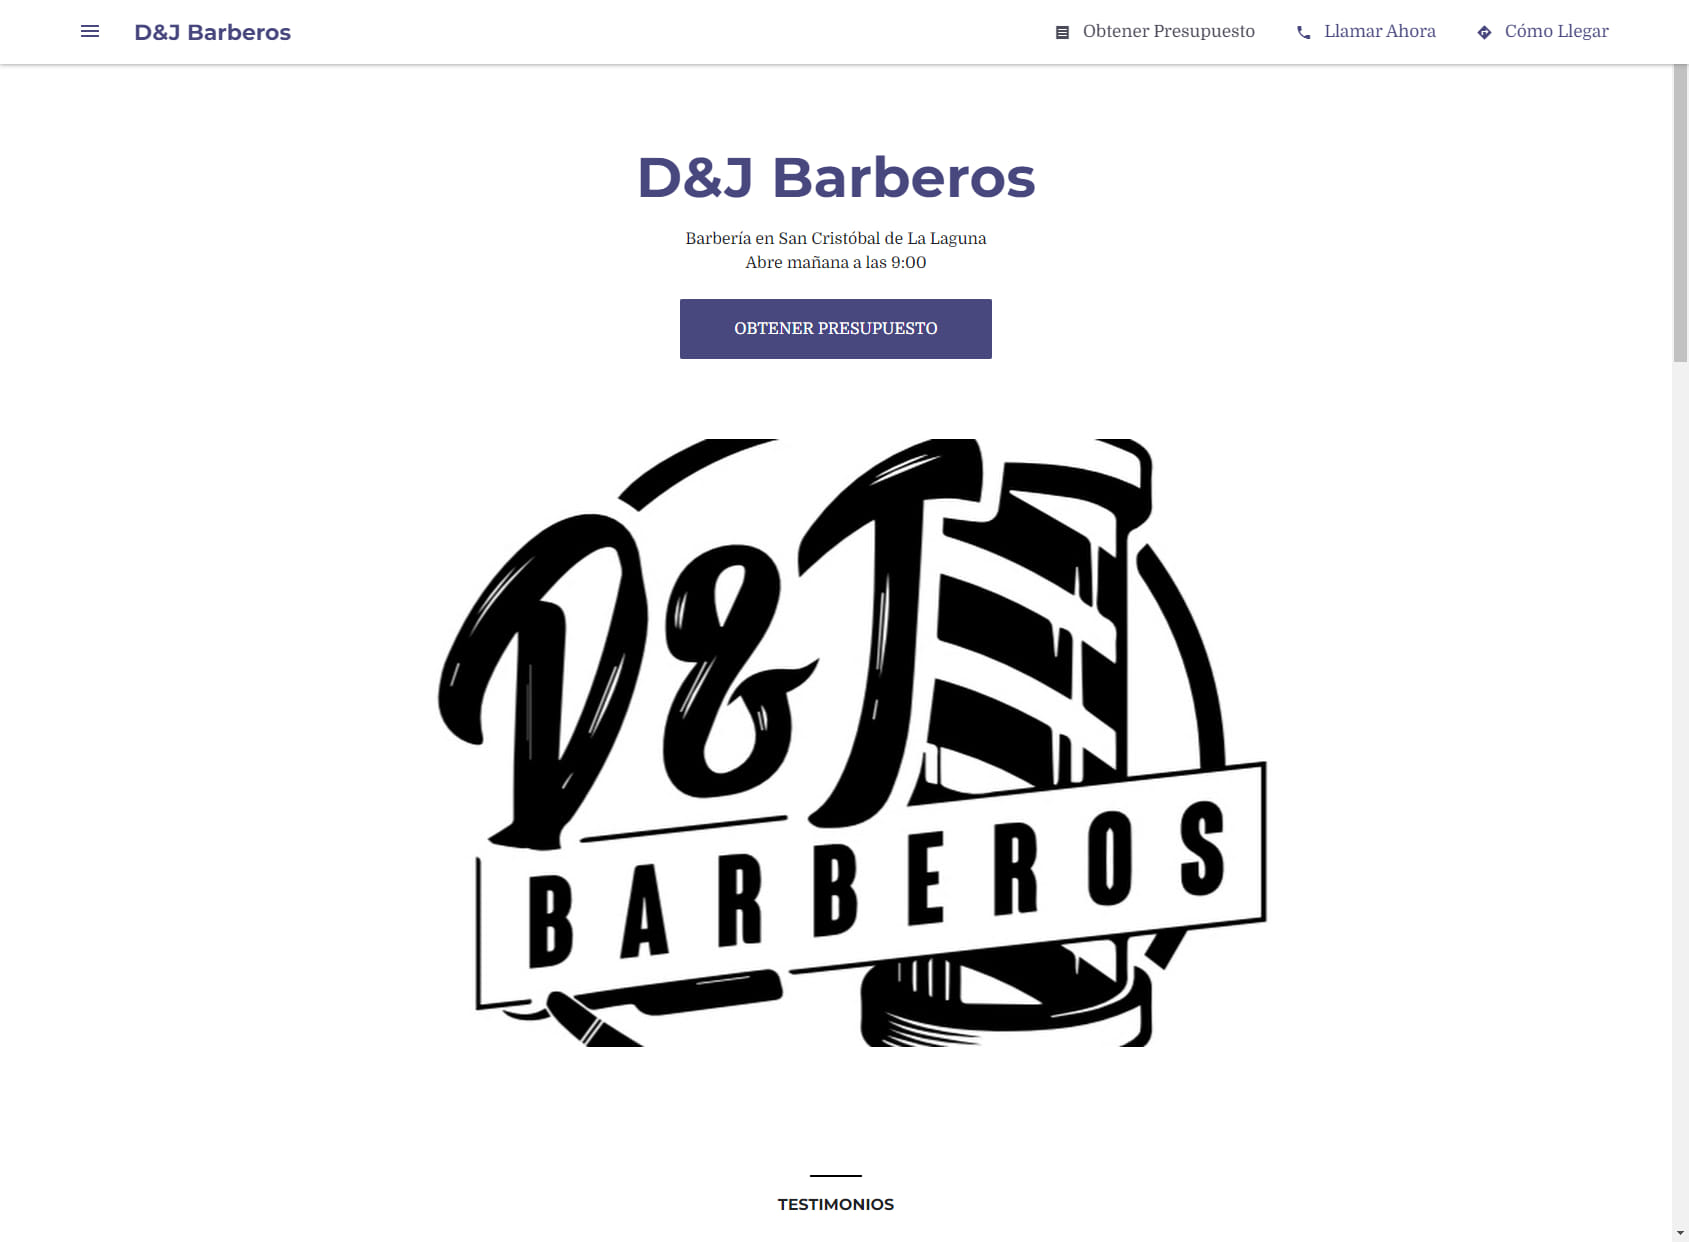 D&J Barberos